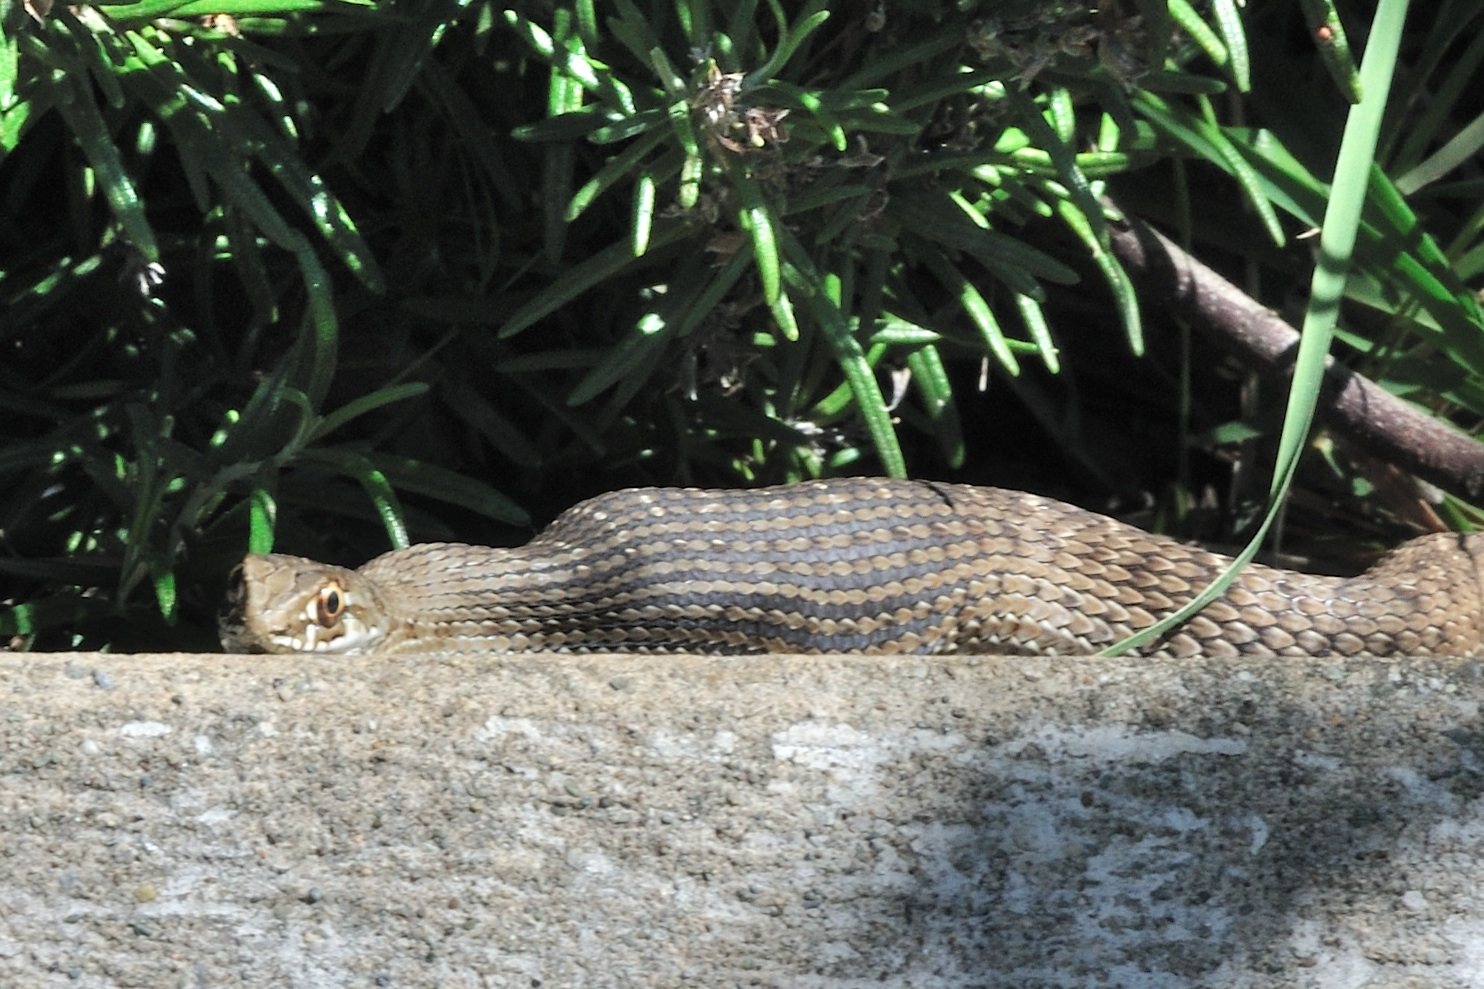 Identificazione di un serpente (Malpolon monspessulanus)